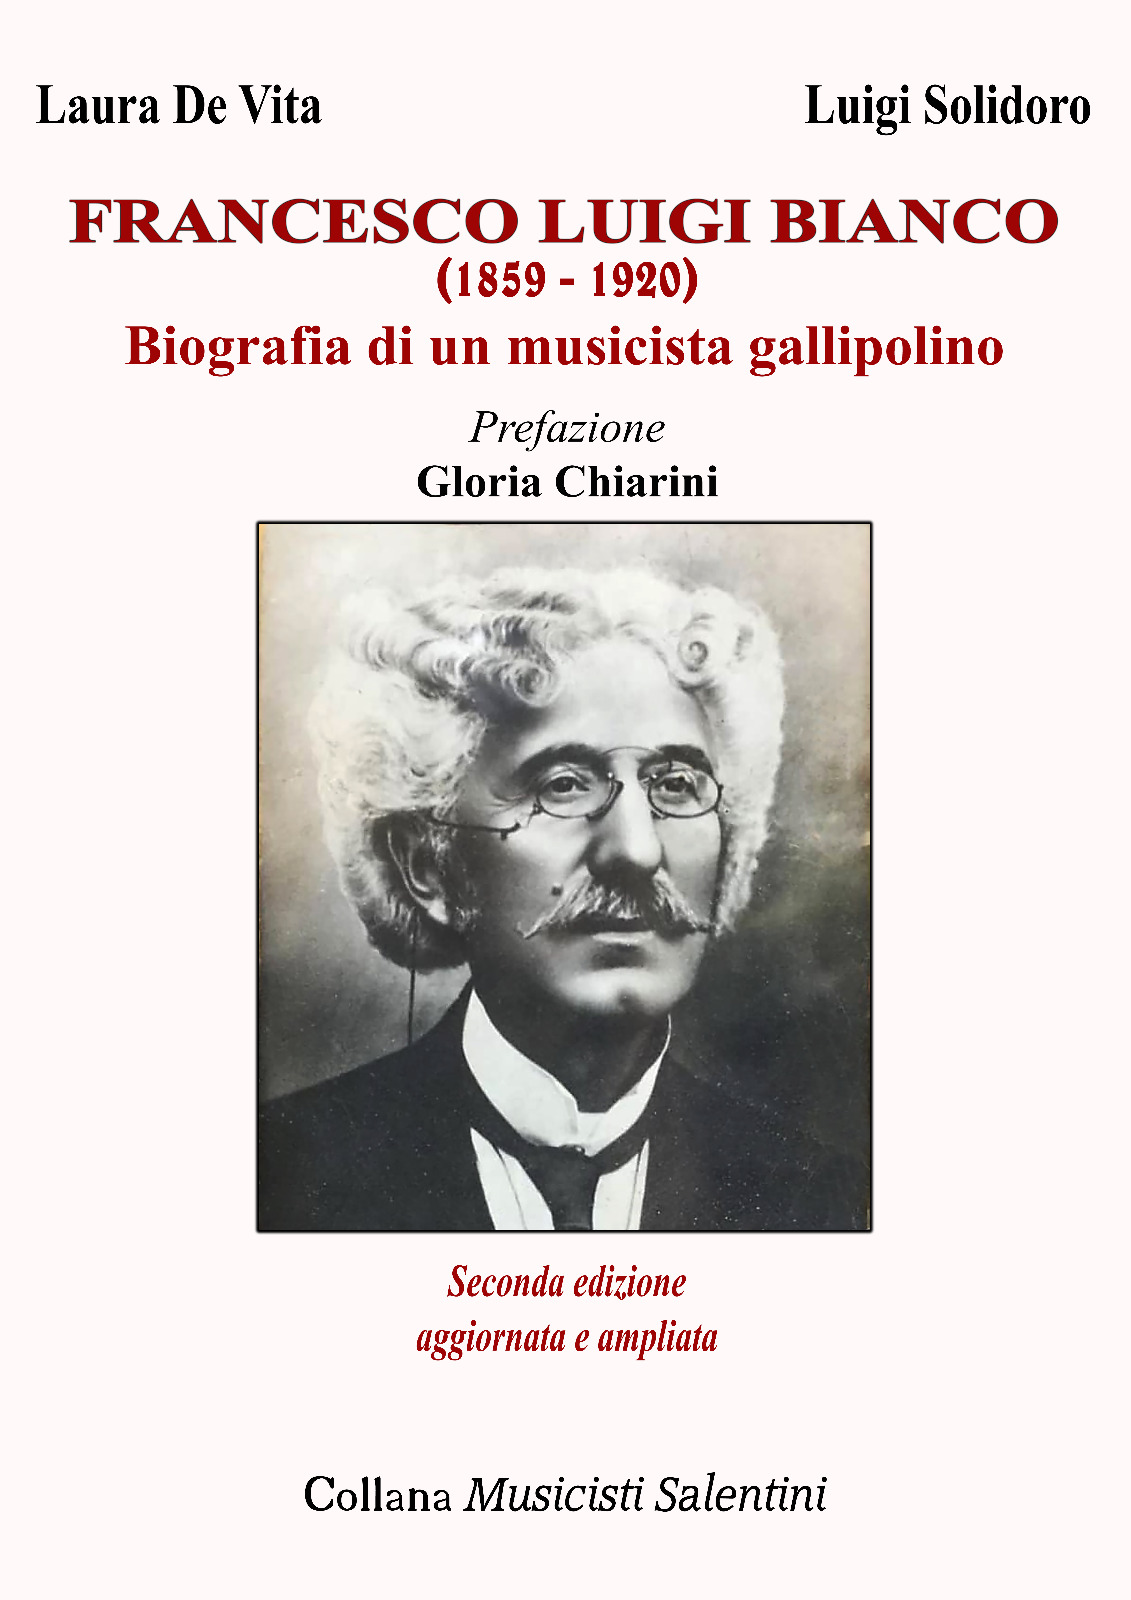 La copertina della nuova edizione della monografia relativa al compositore Francesco Luigi Bianco